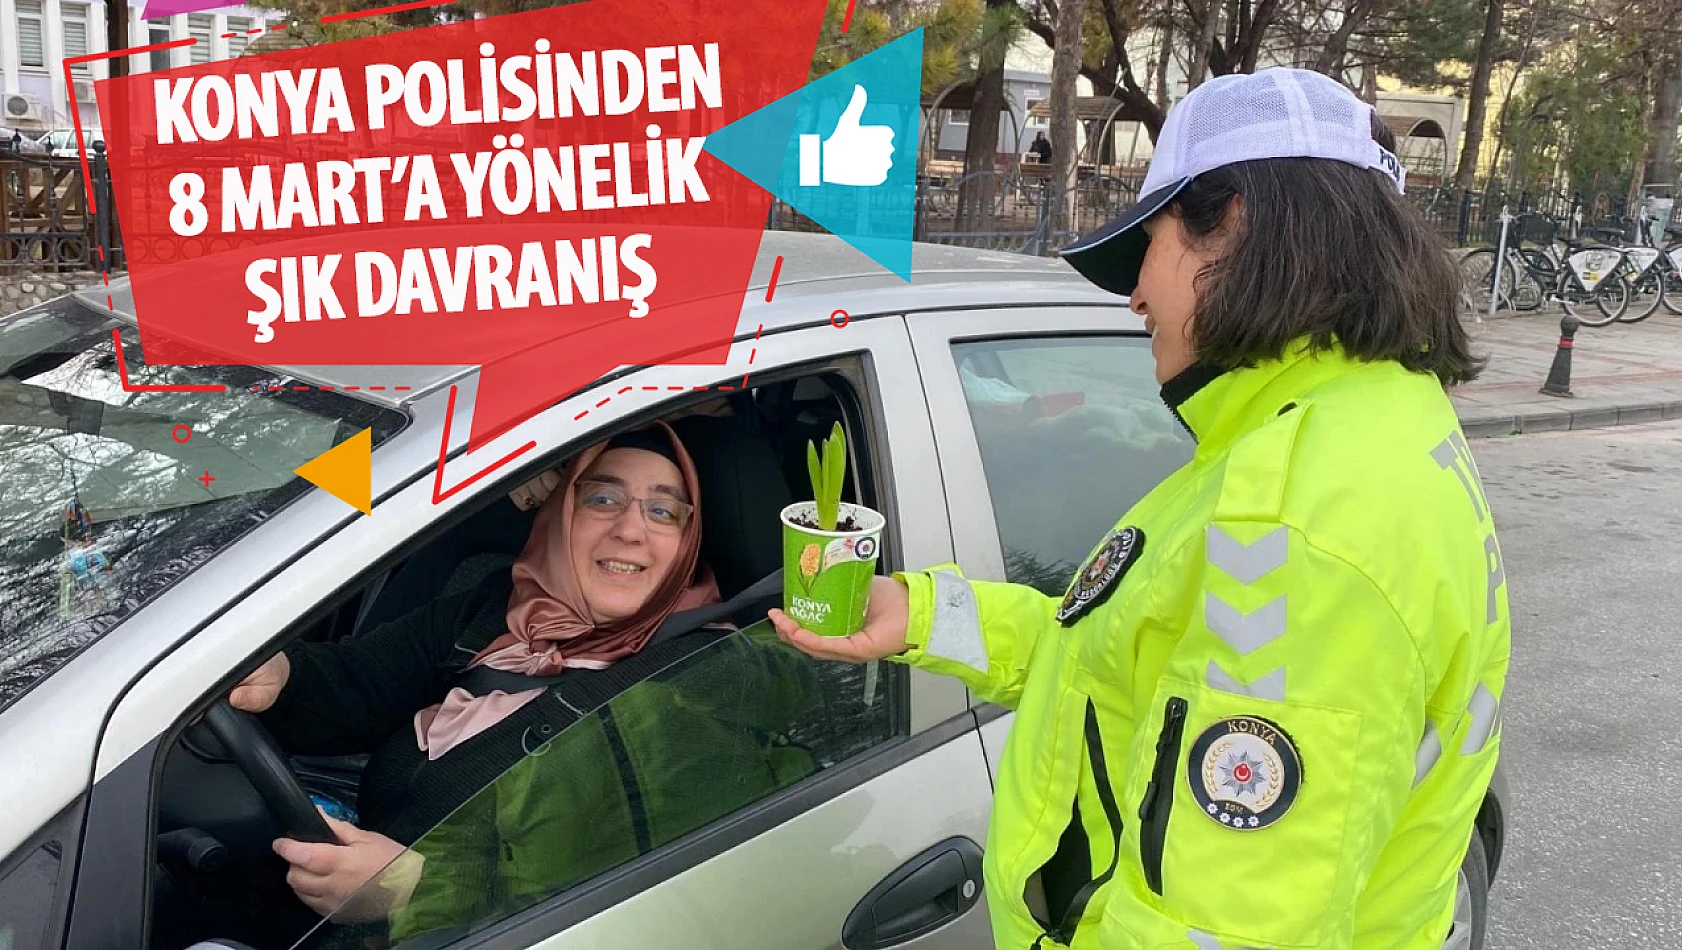 Konya trafik polislerinden, kadın sürücülere çiçek sürprizi